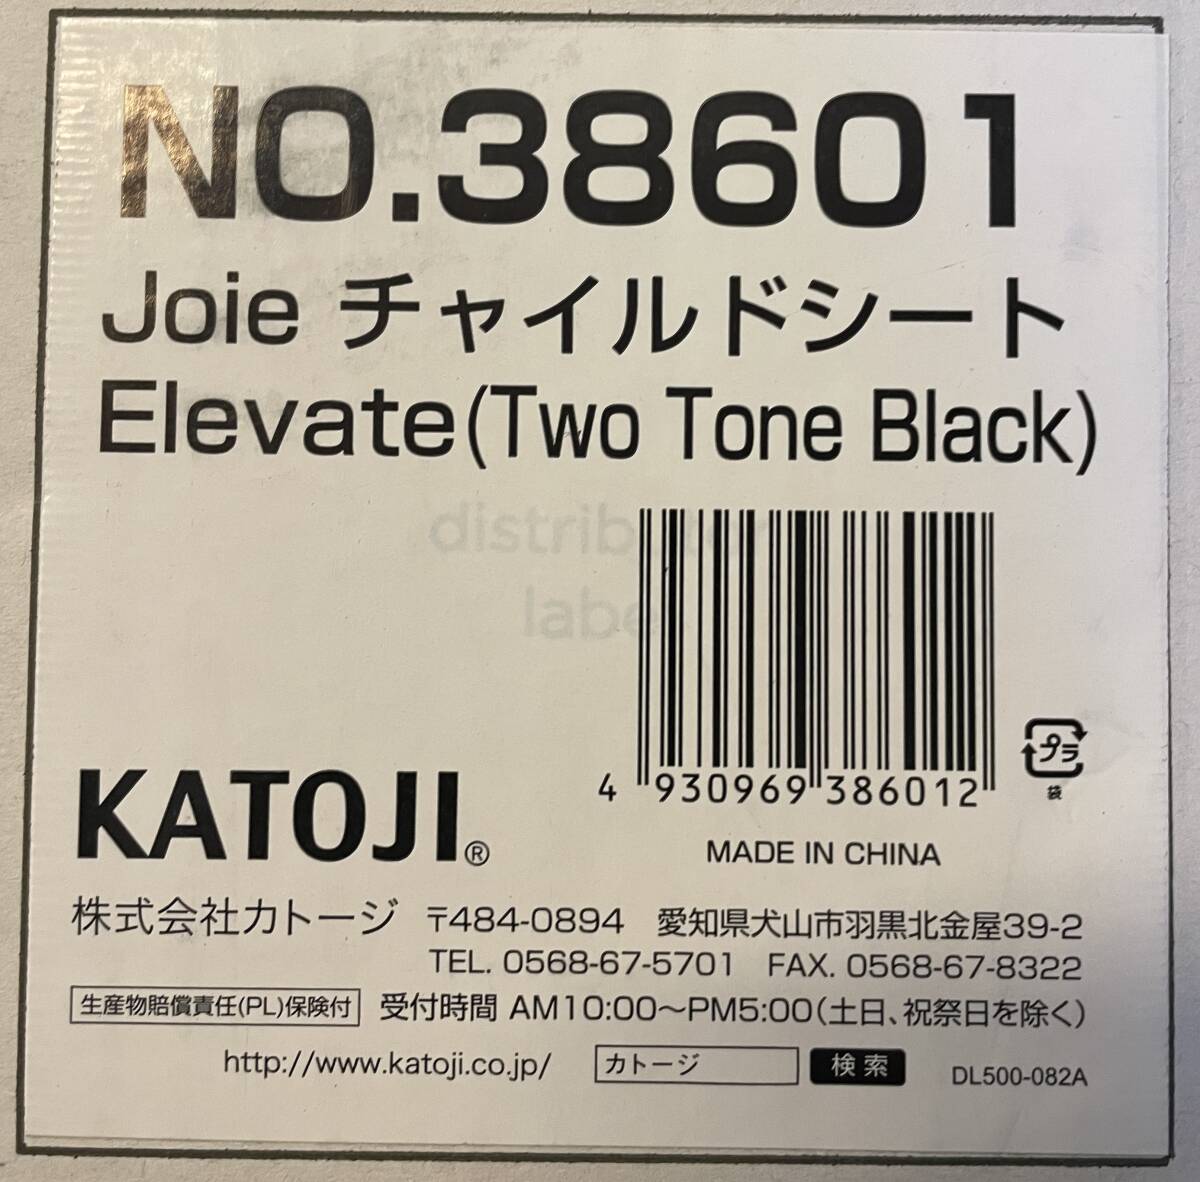  KATOJI Joie NO.38601Elevate (Two Tone Black)チャイルドシートの画像5